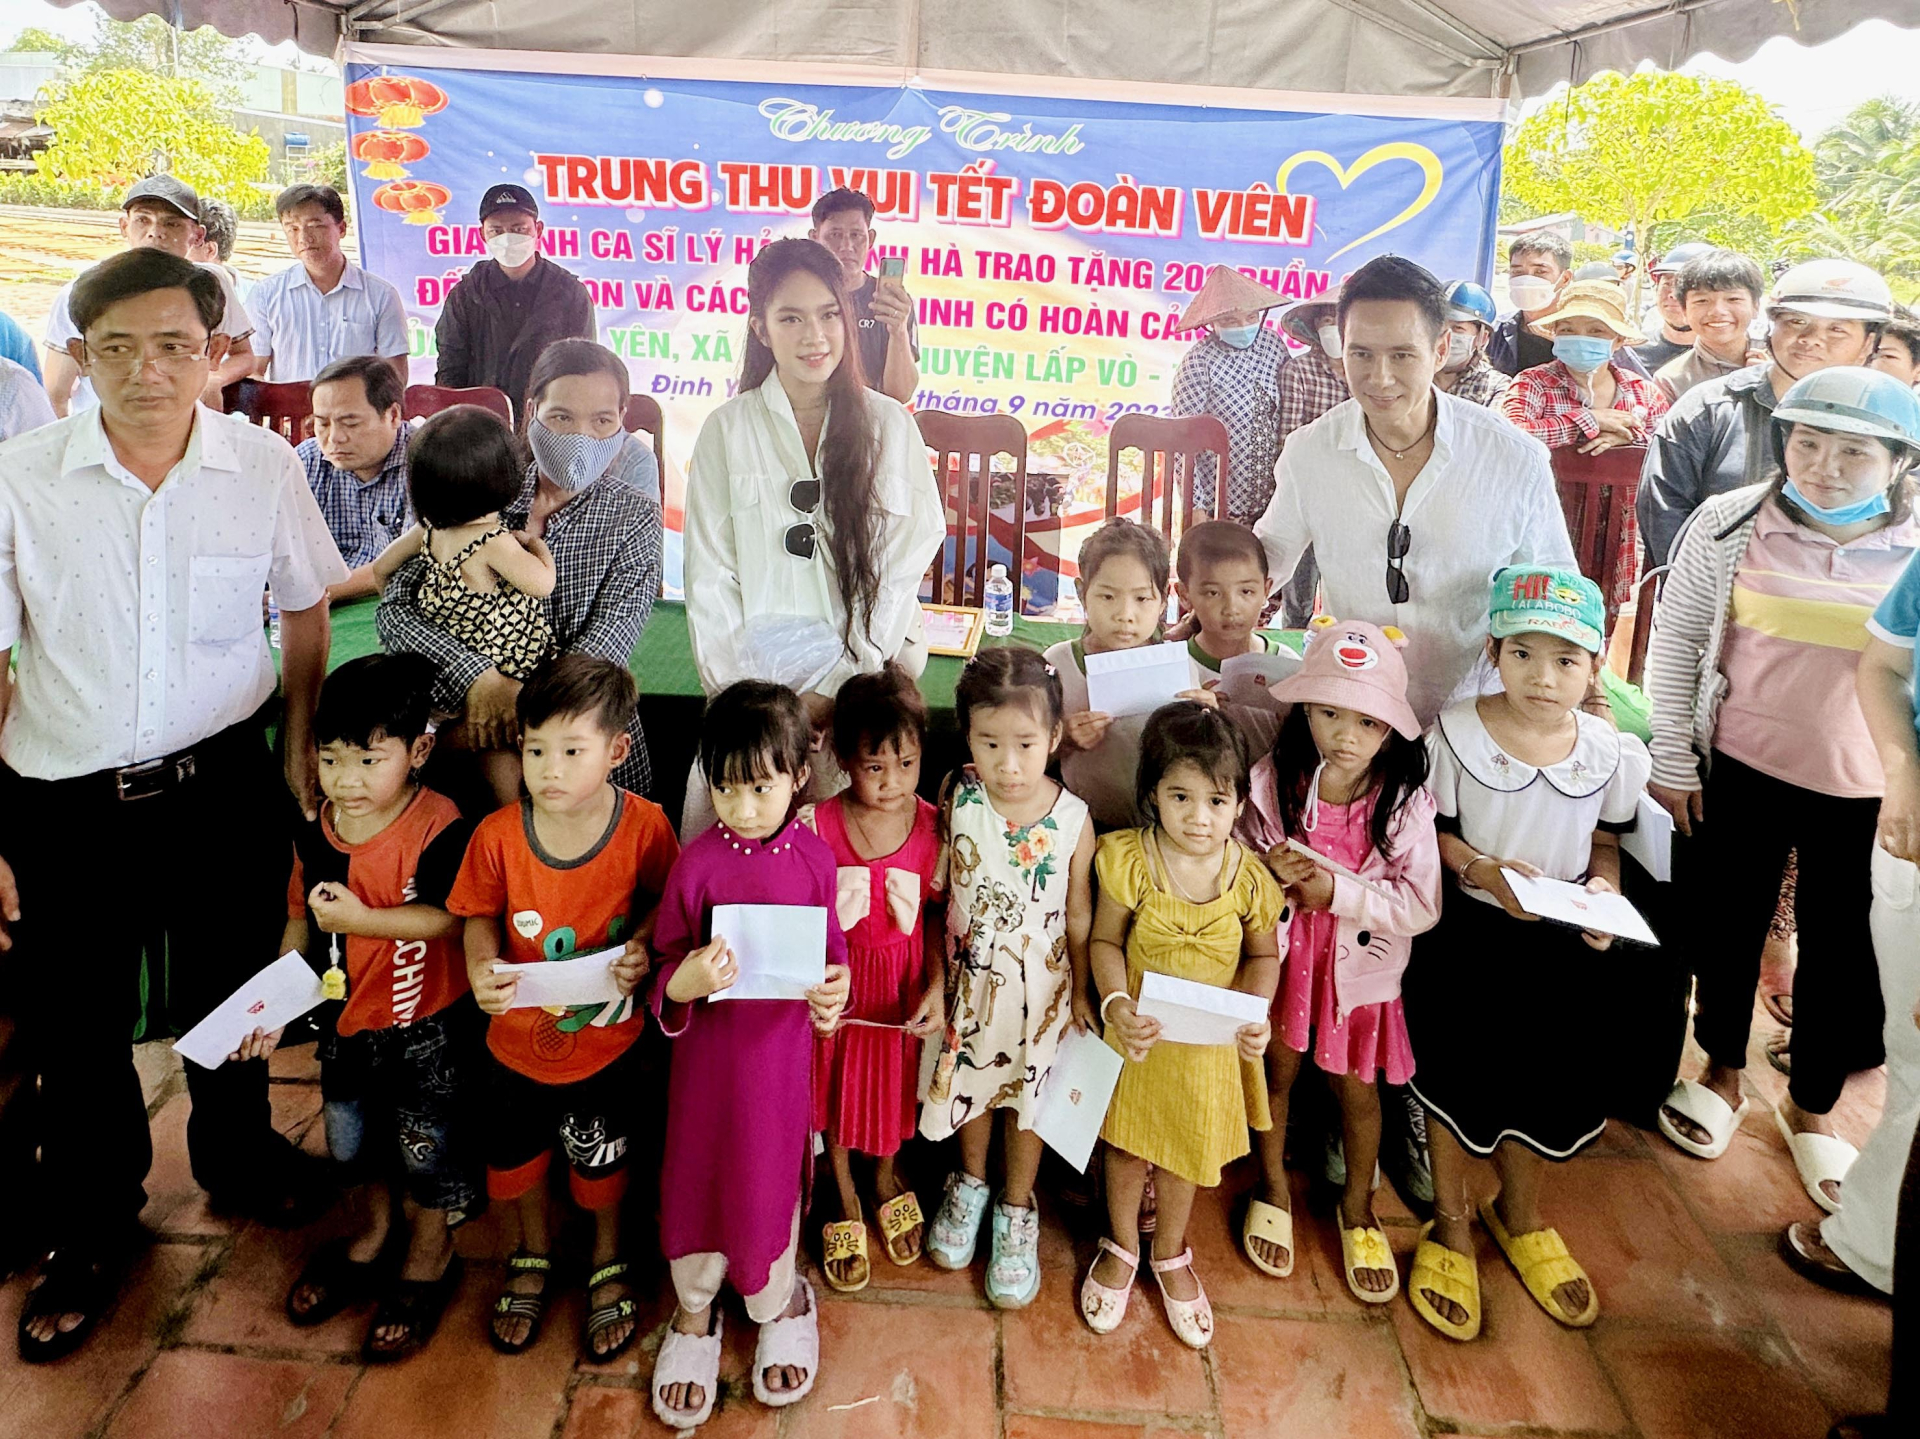 Gia đình Lý Hải-Minh Hà dành trọn vẹn ngày sinh nhật để làm từ thiện - ảnh 2